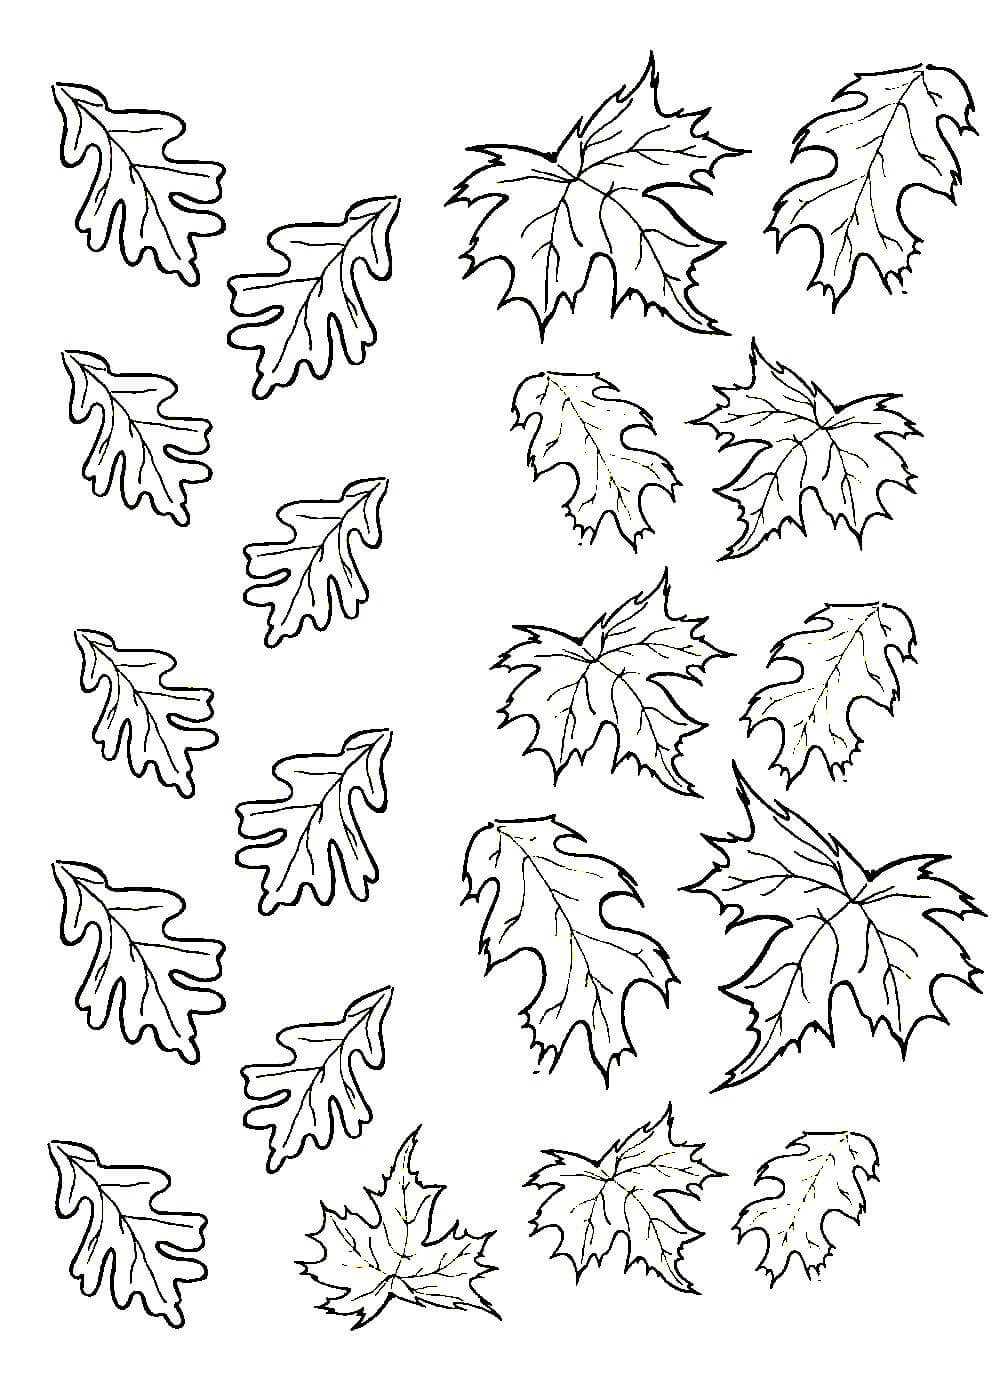 Трафареты с деревьями. шаблоны листьев (100 картинок и трафаретов) трафарет дерево без листьев для рисования